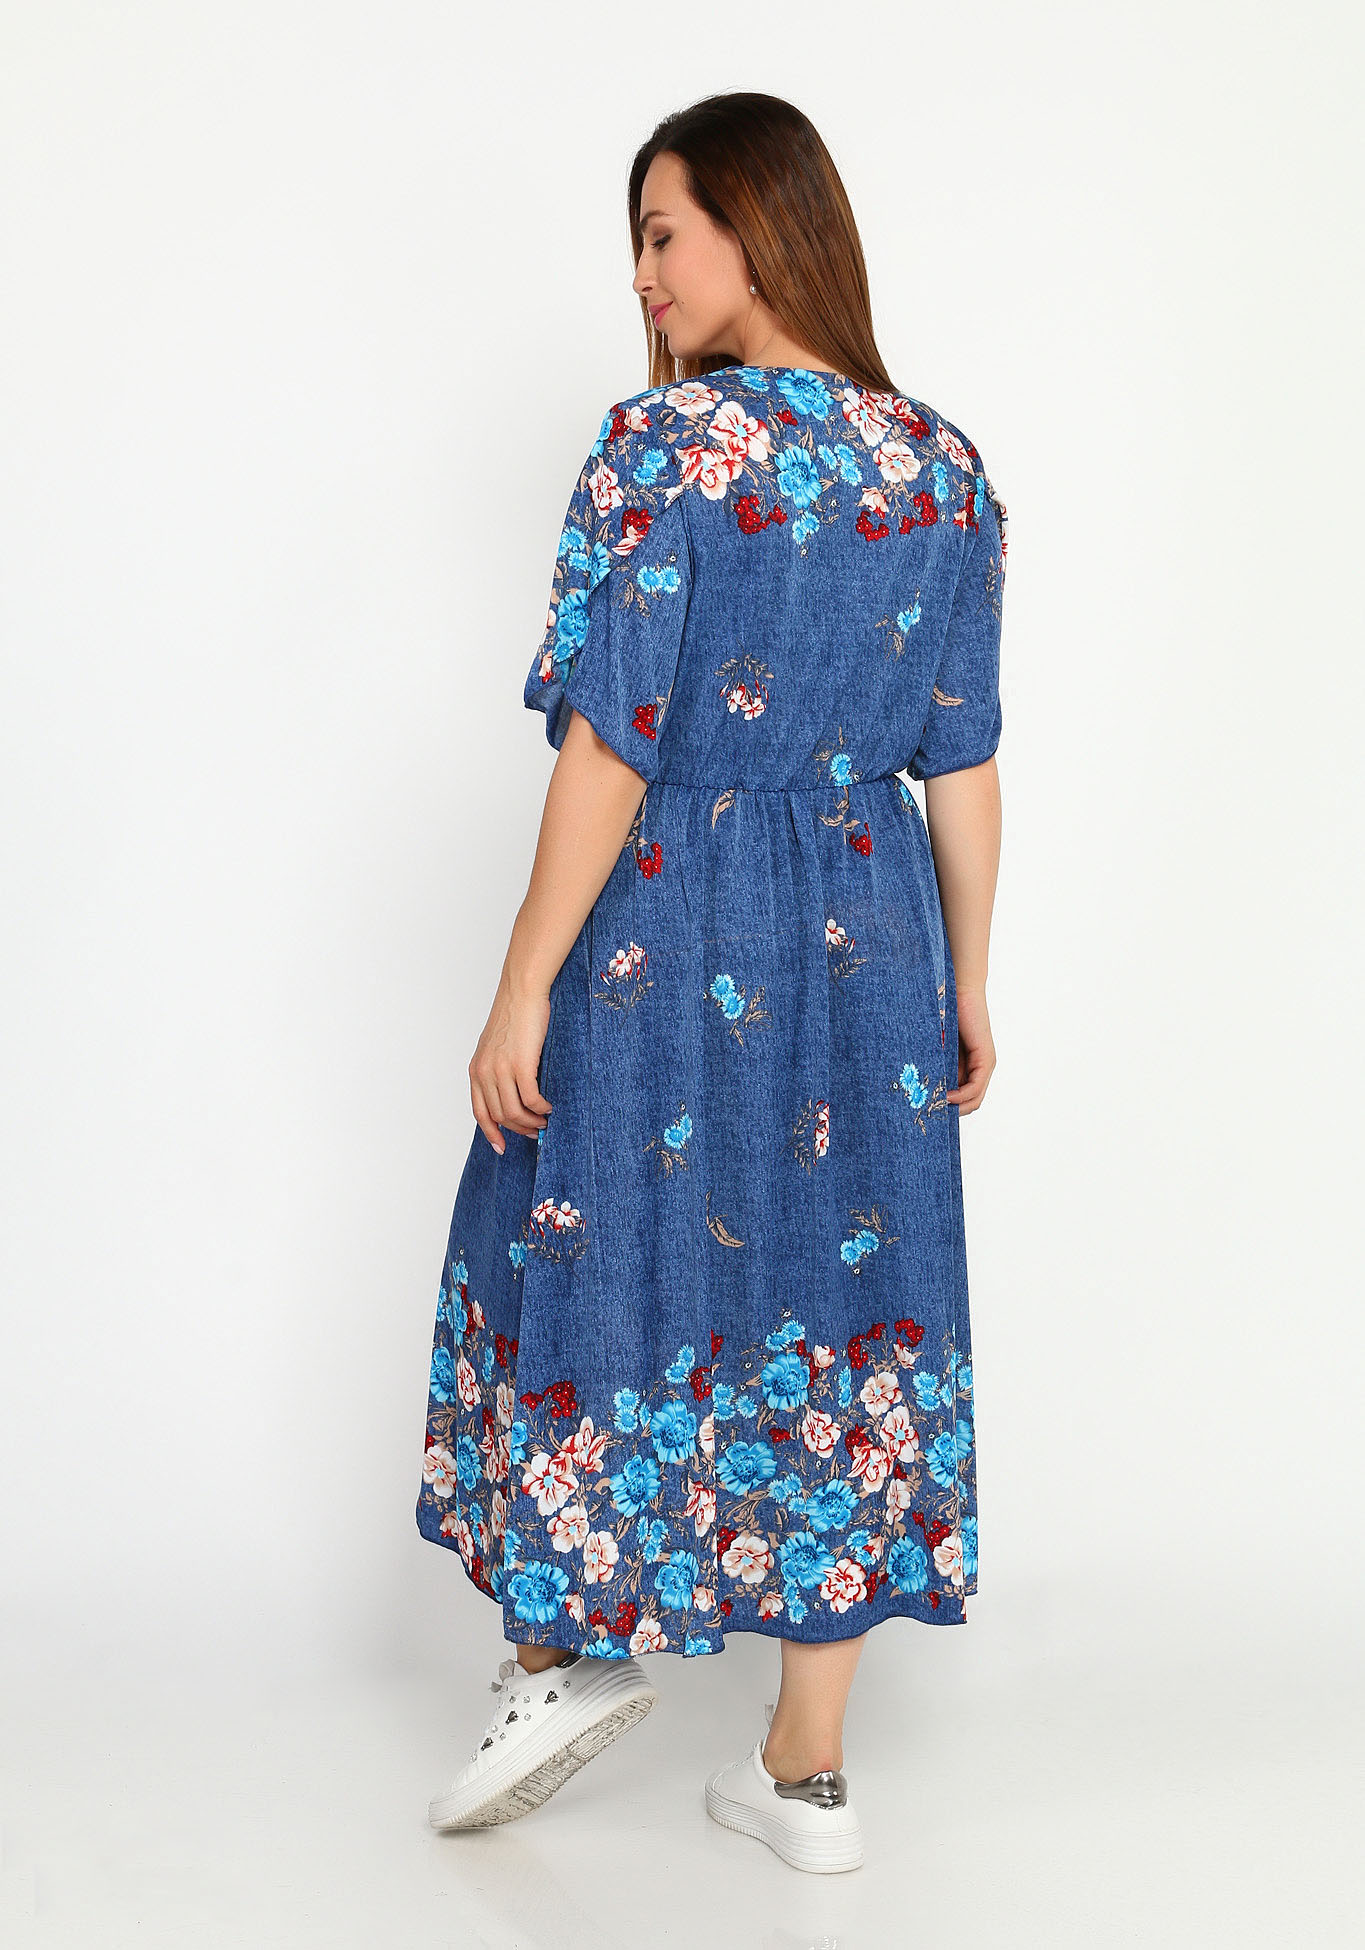 Платье с резинкой на талии и купонным принтом Bianka Modeno, размер 48, цвет голубые цветы - фото 4